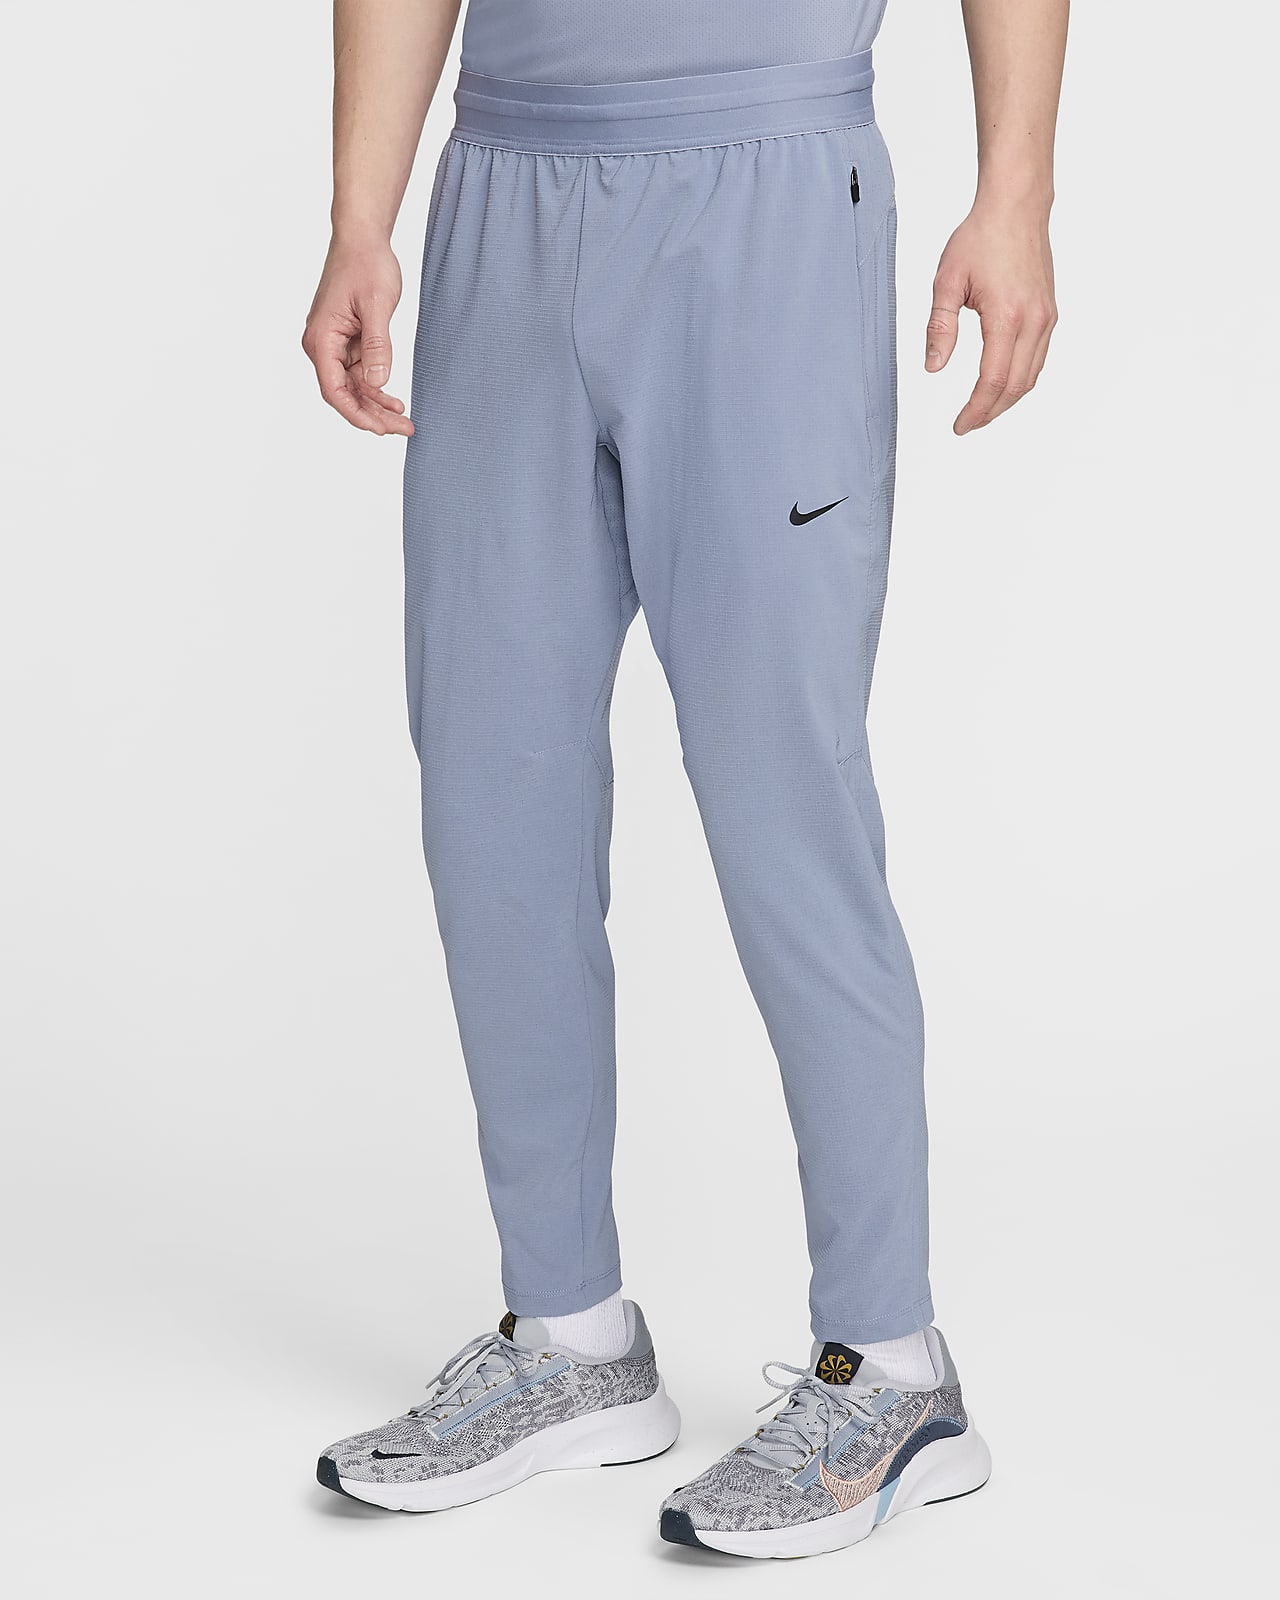 Pantalon de fitness Dri-FIT Nike Flex Rep pour homme